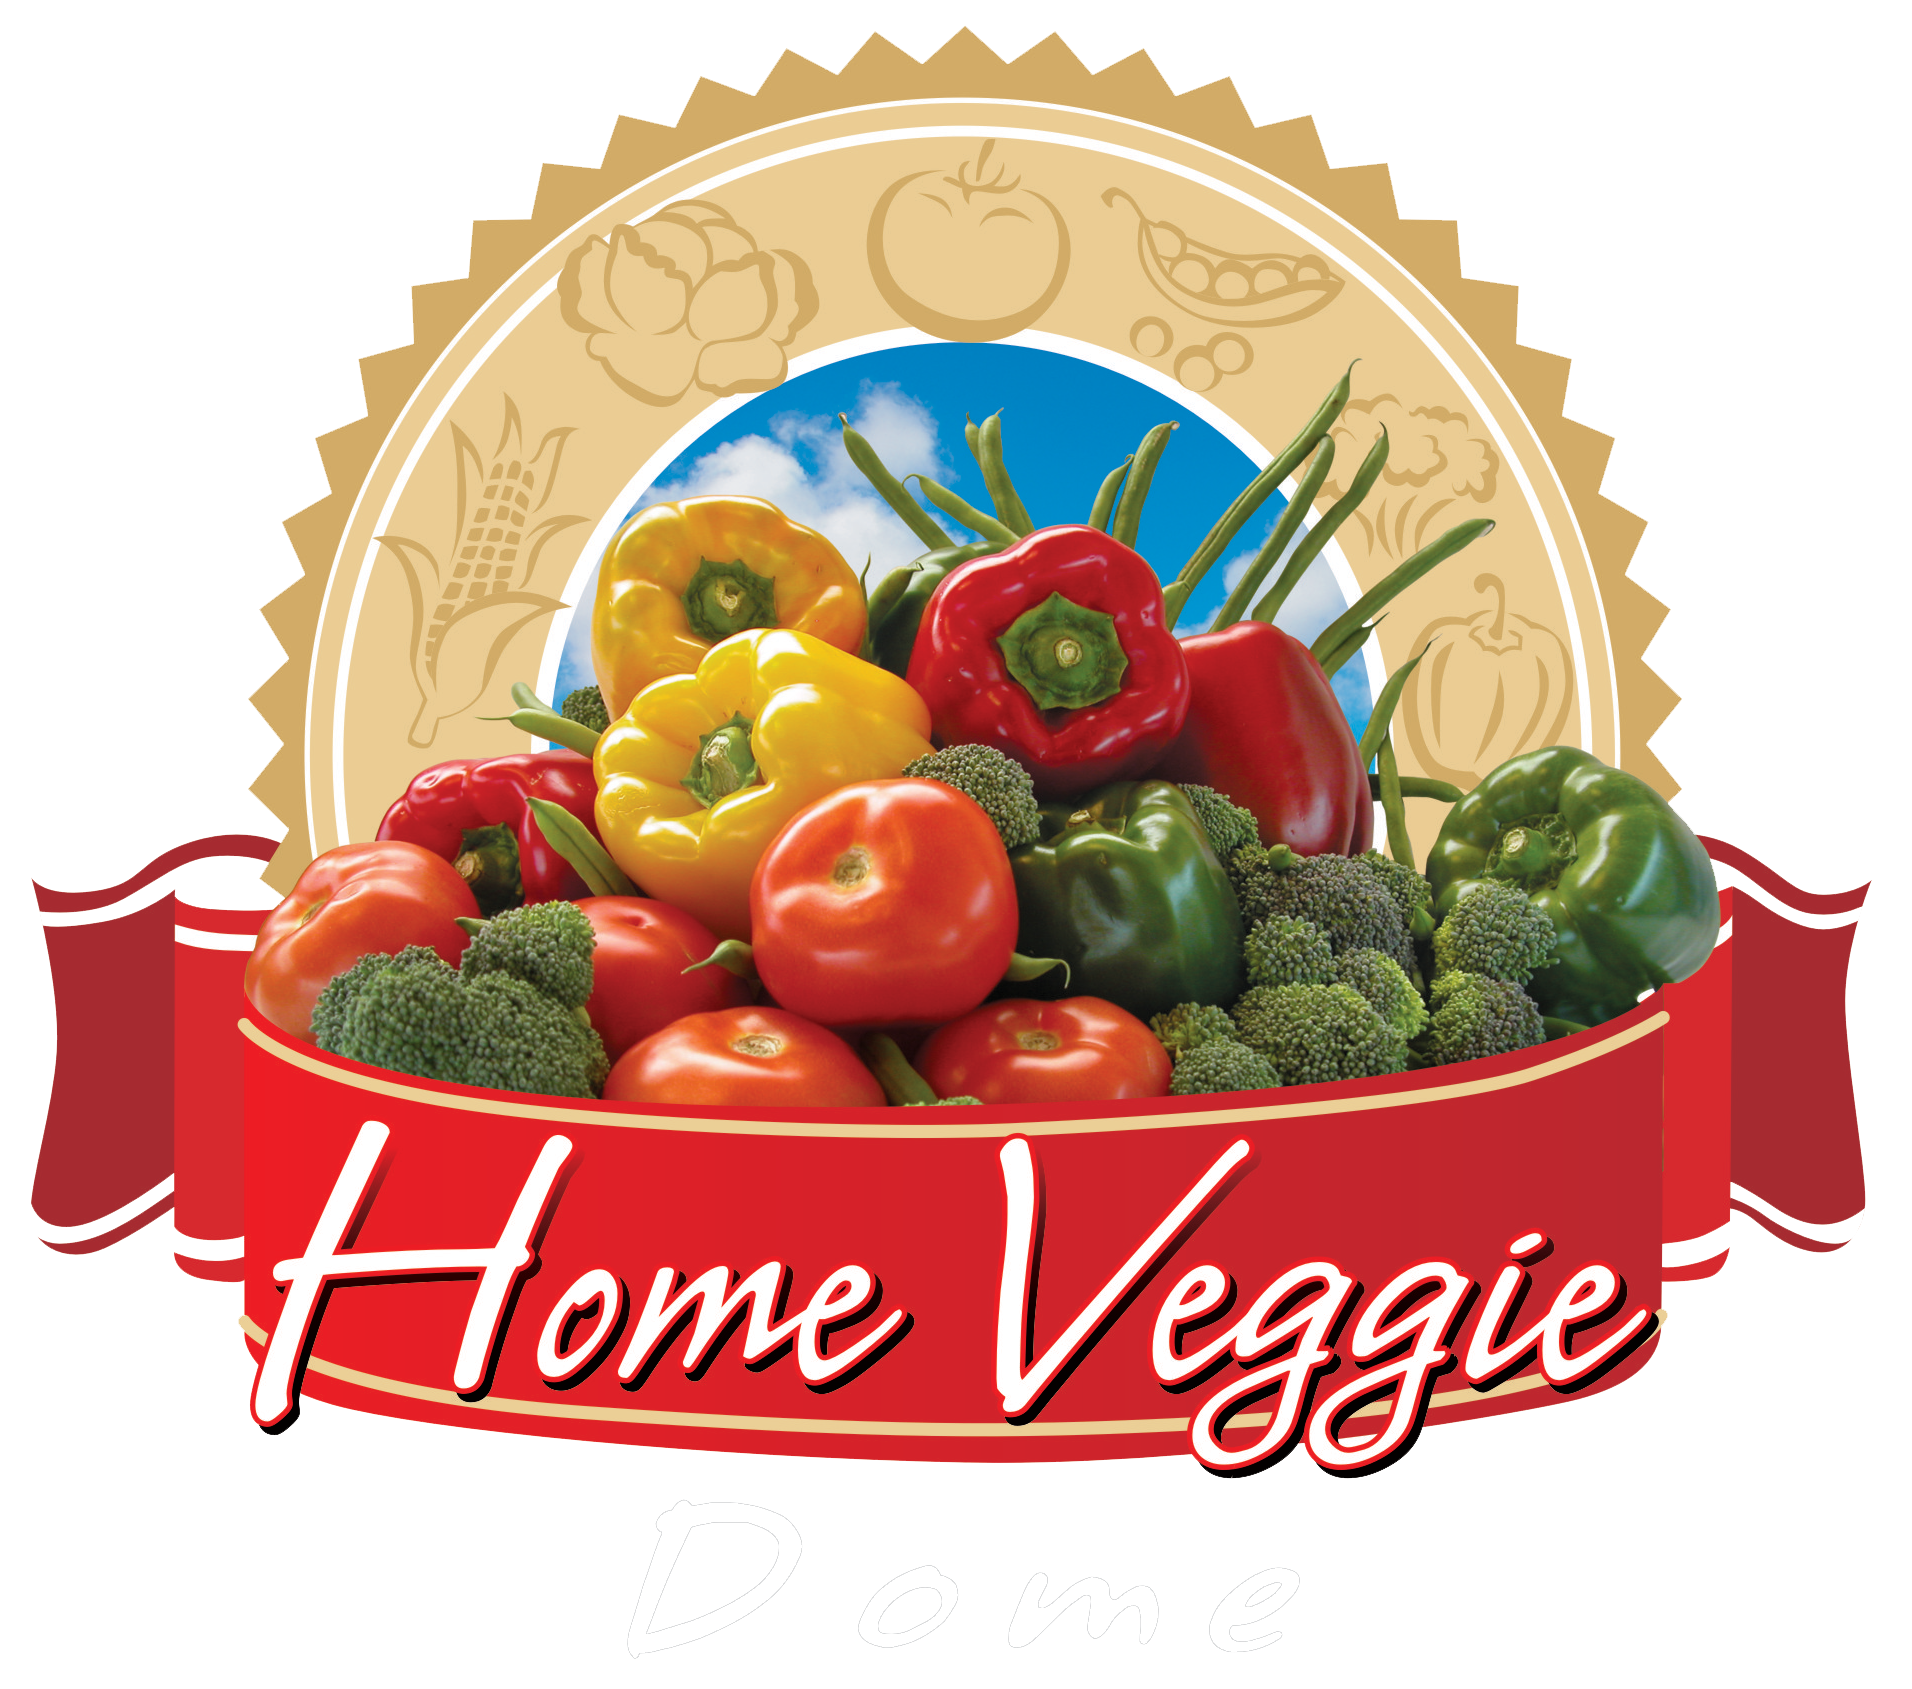 Home Veggie Dome